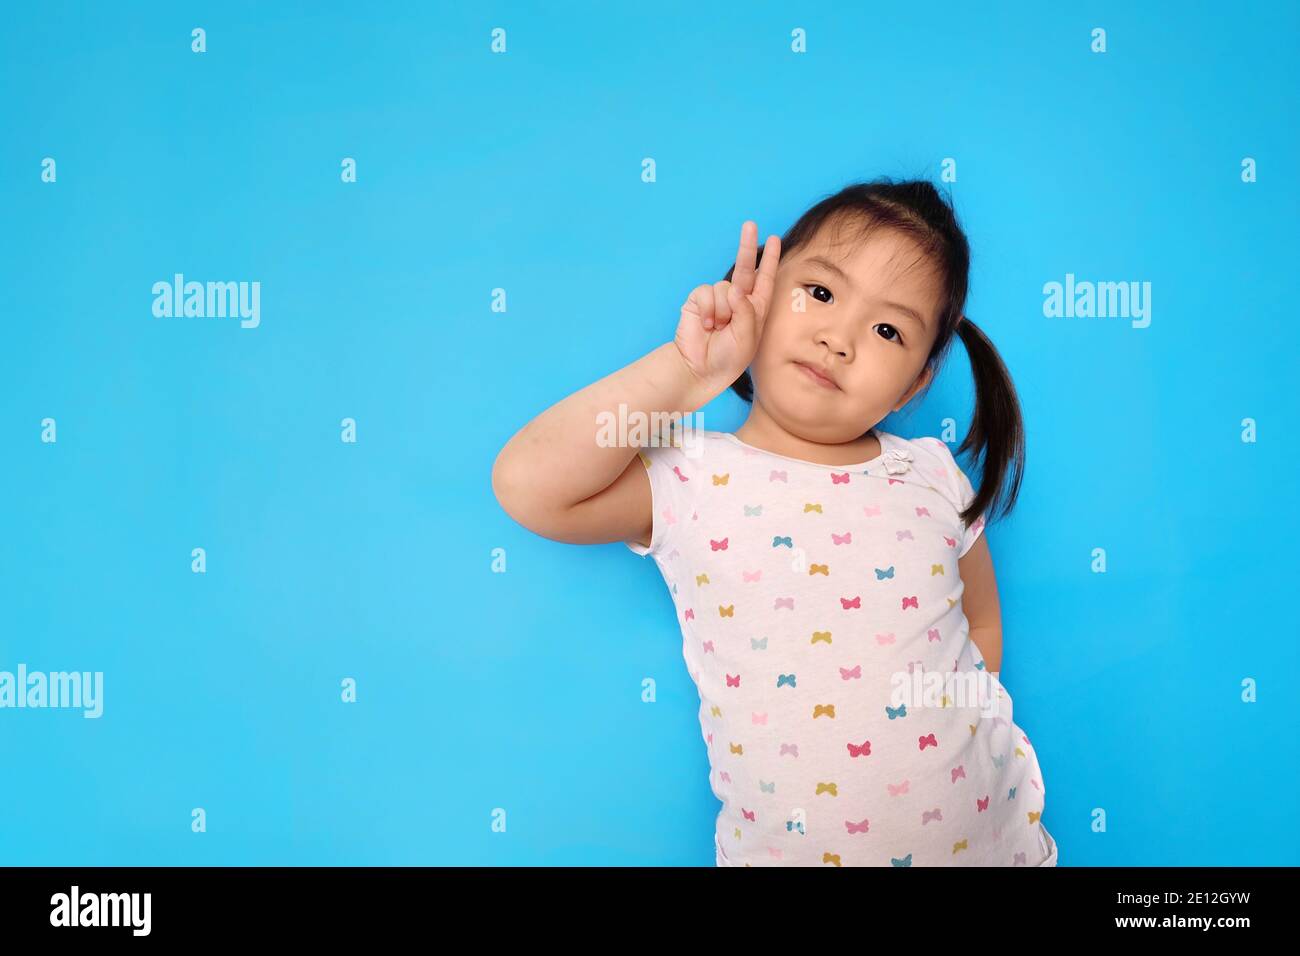 Une jeune fille asiatique mignonne gestuelle un signe de victoire en utilisant 2 doigts. Fond bleu clair Uni. Banque D'Images